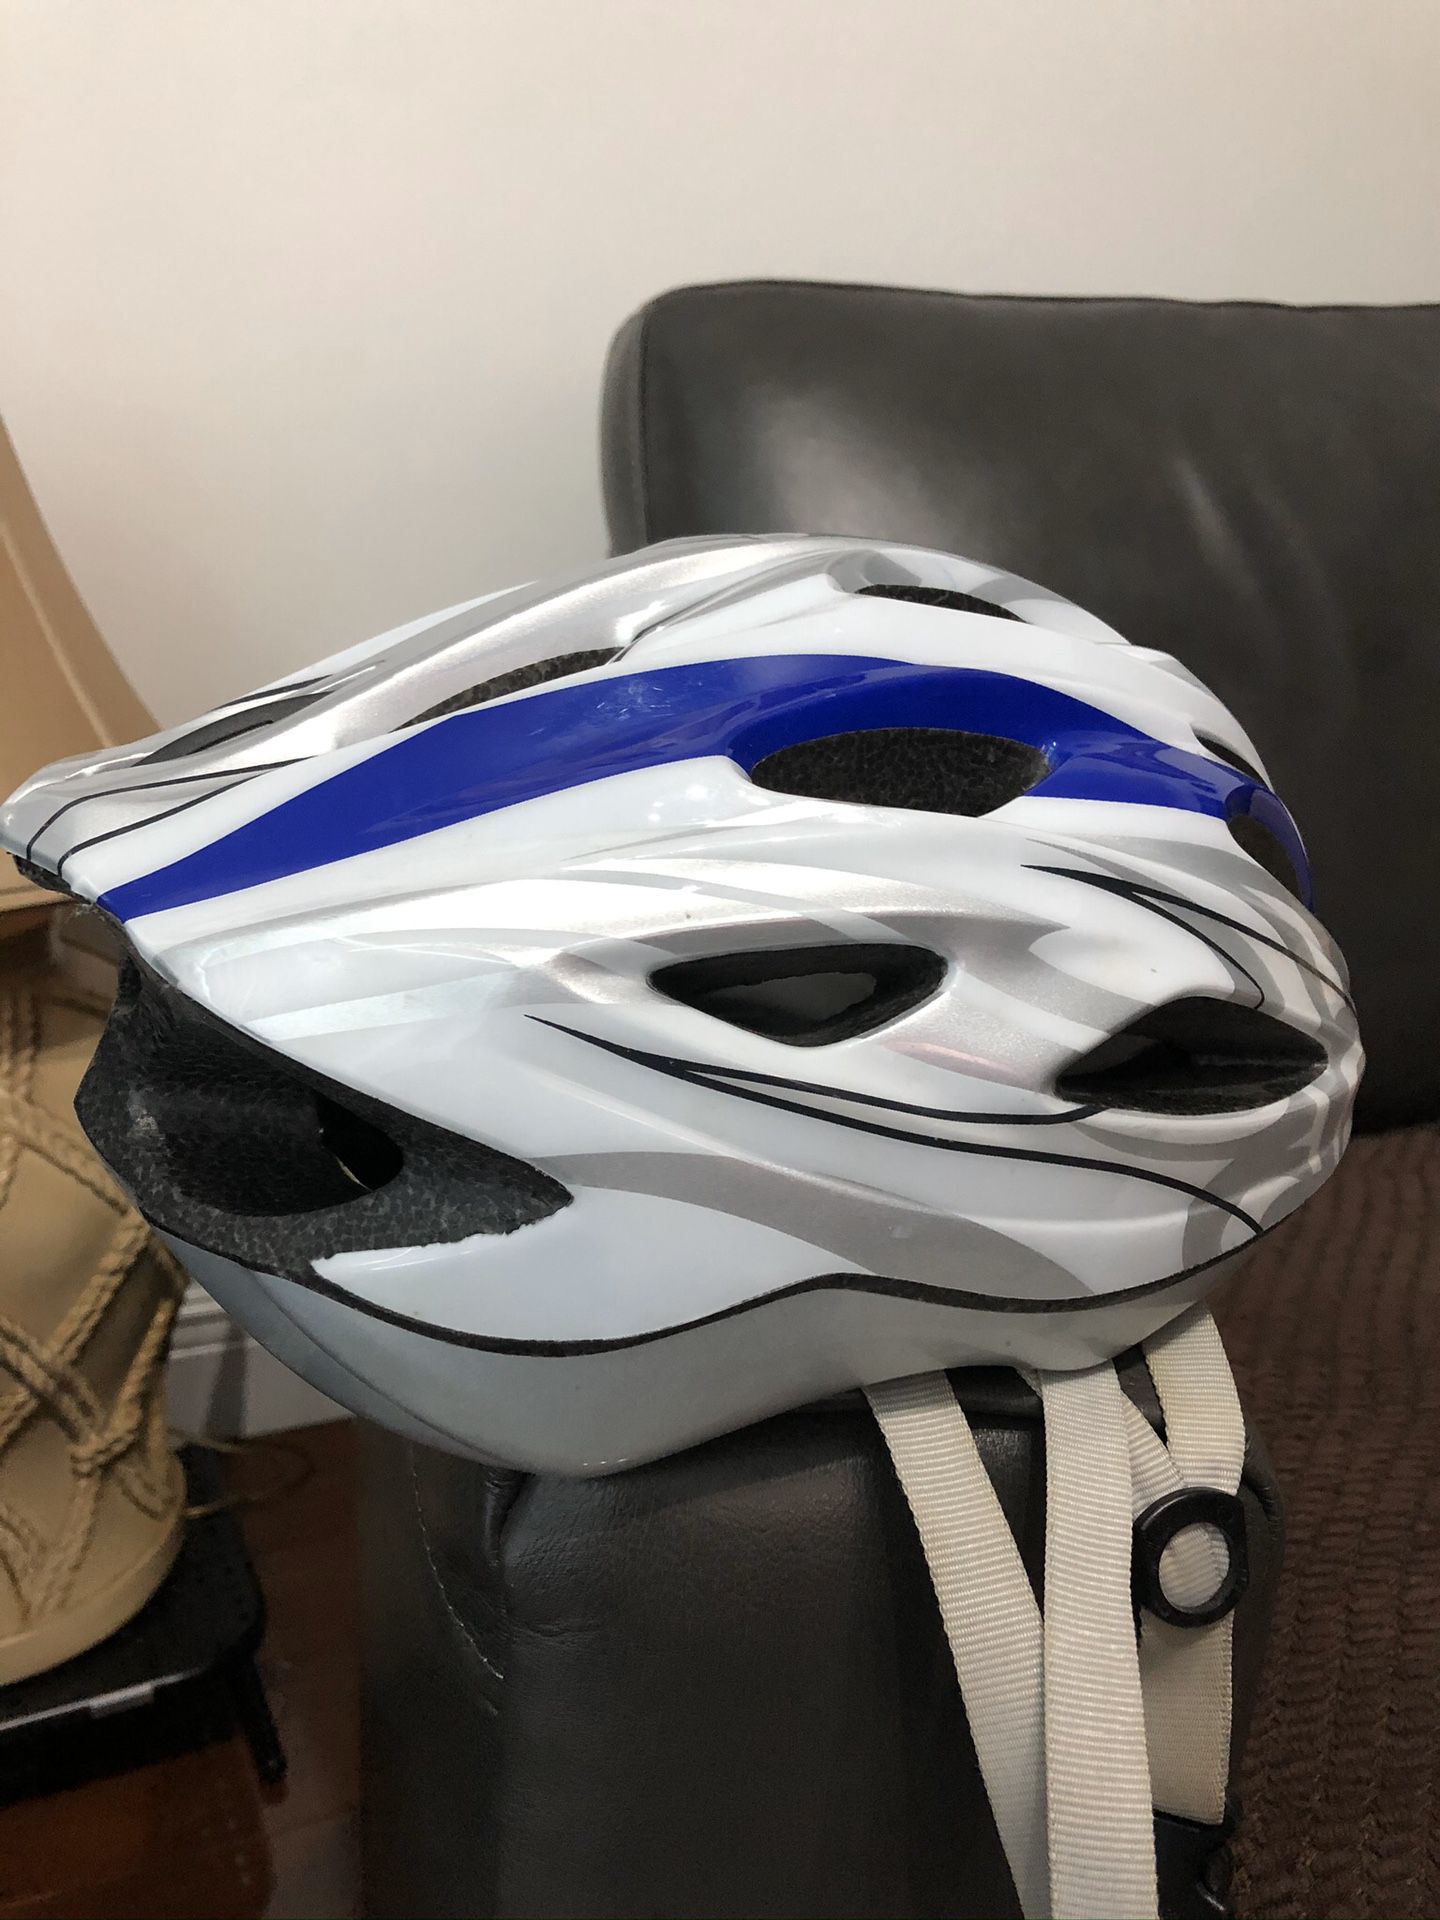 Airius helmet $30